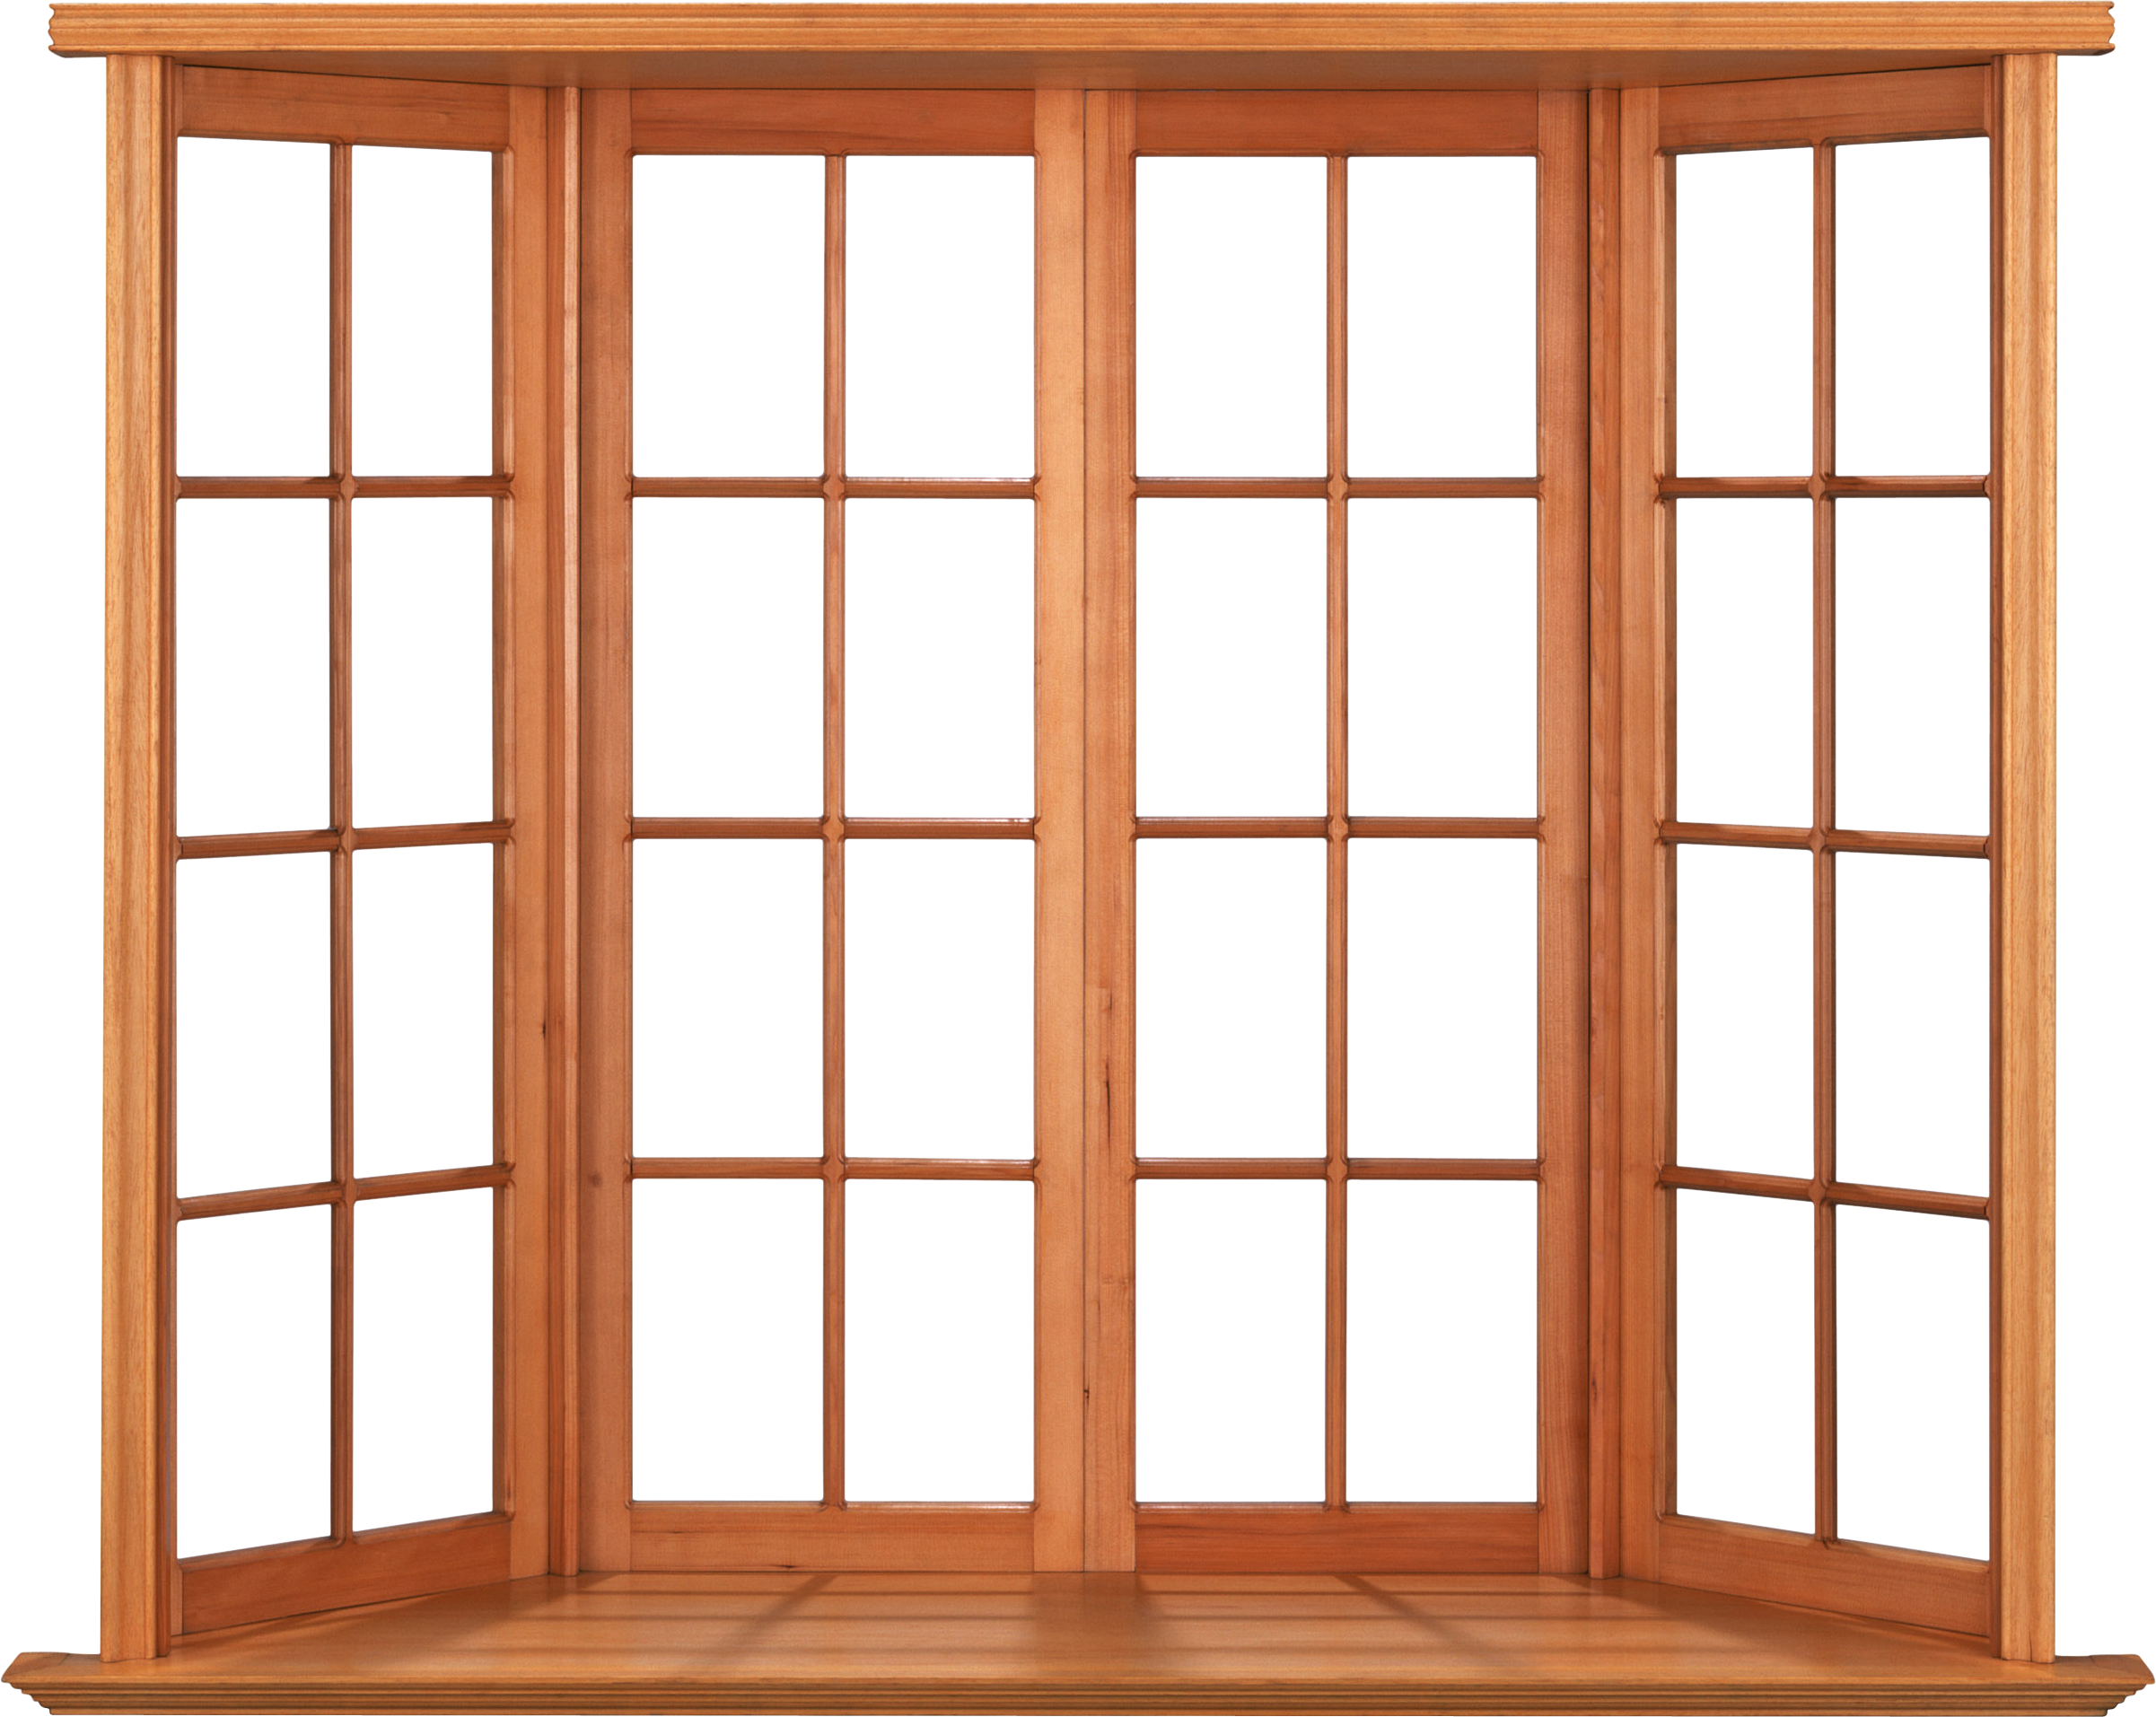 Download gratuito della finestra della casa in legno PNG